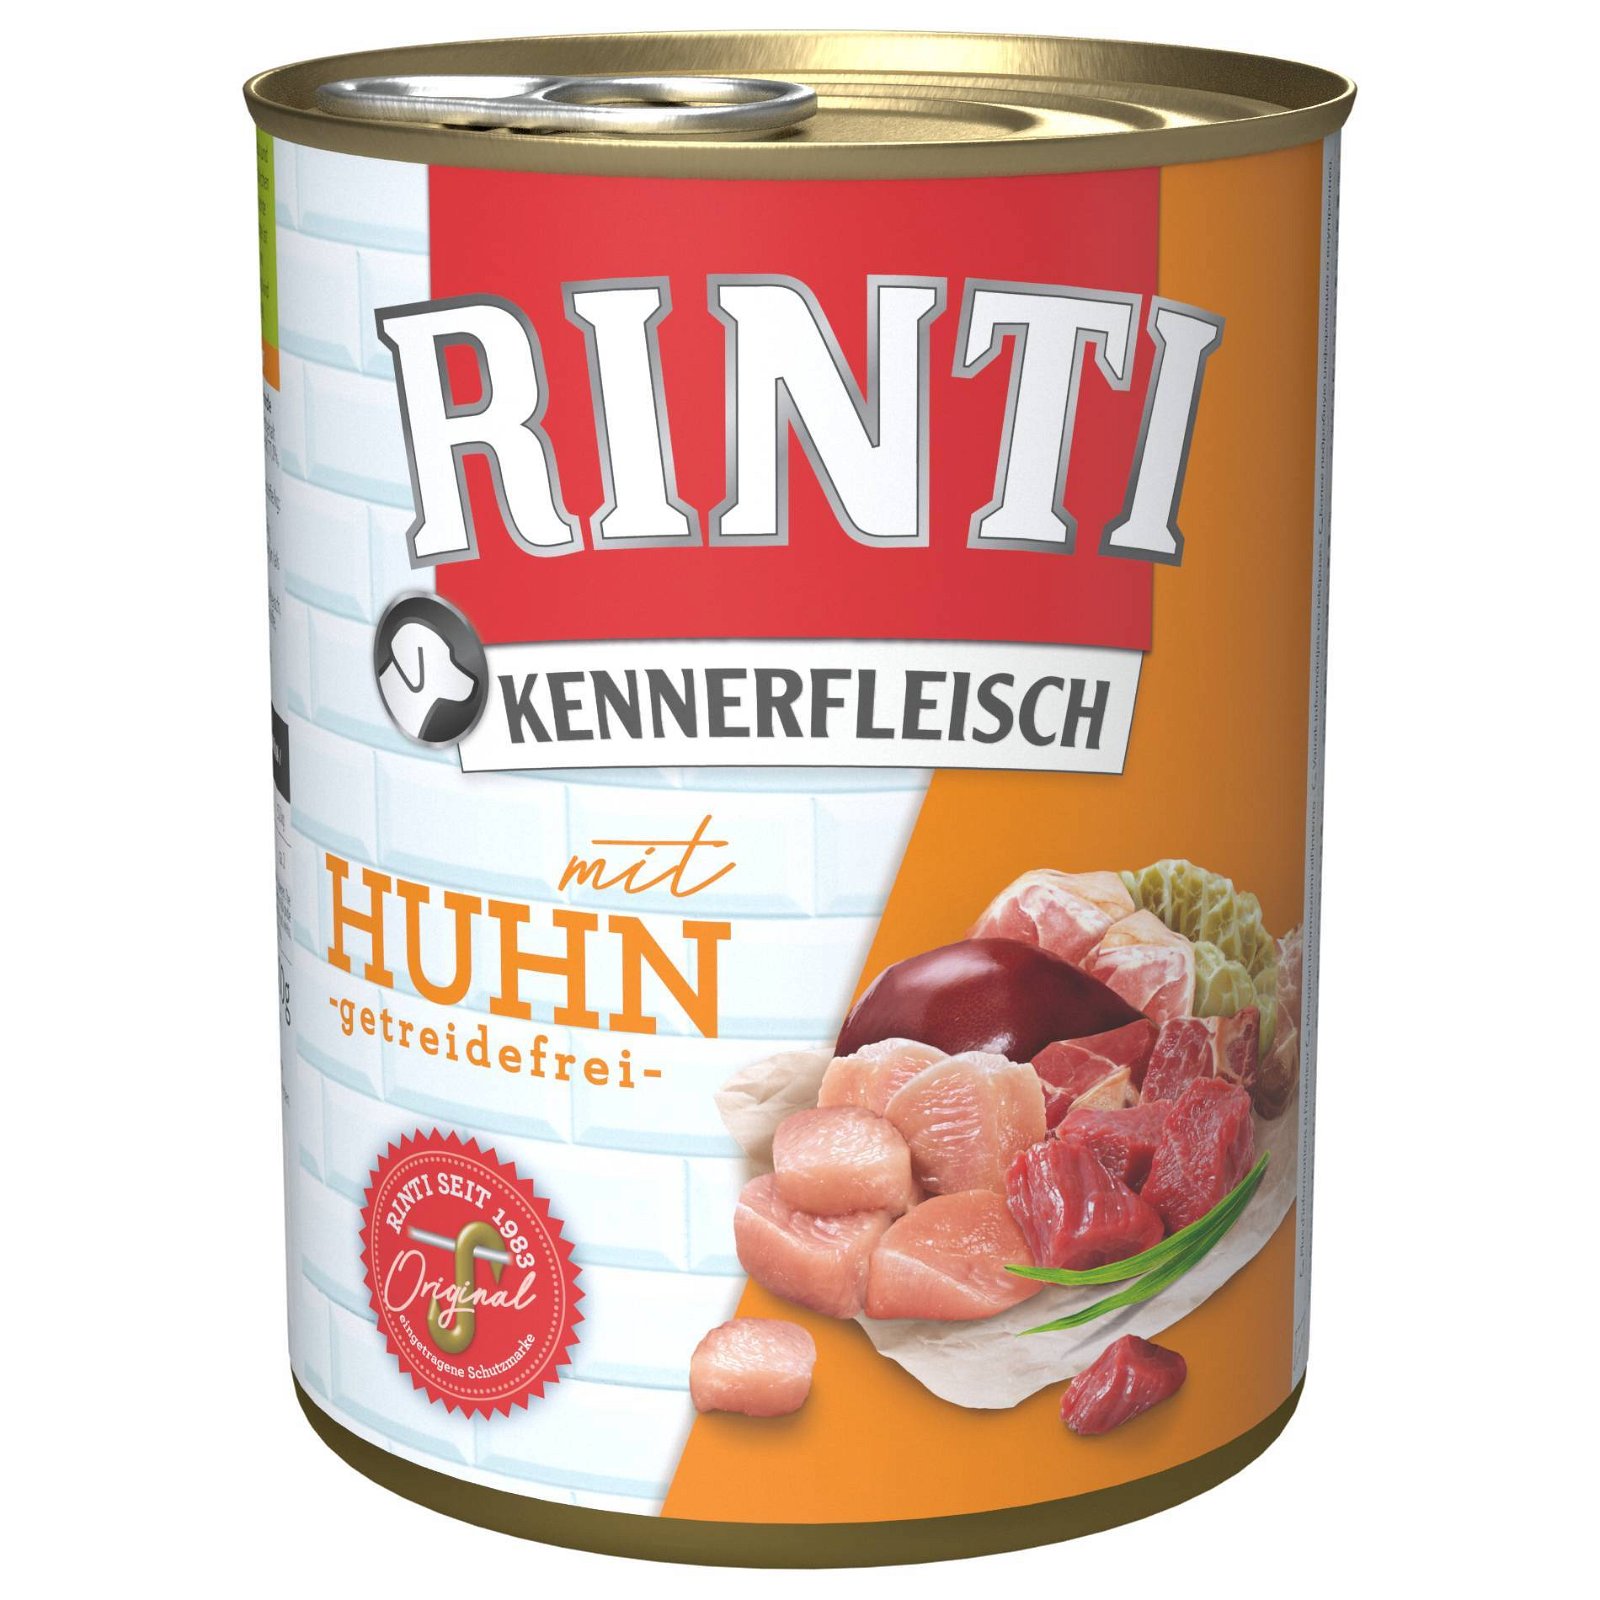 Rinti Kennerfleisch, Huhn, 800g Dose